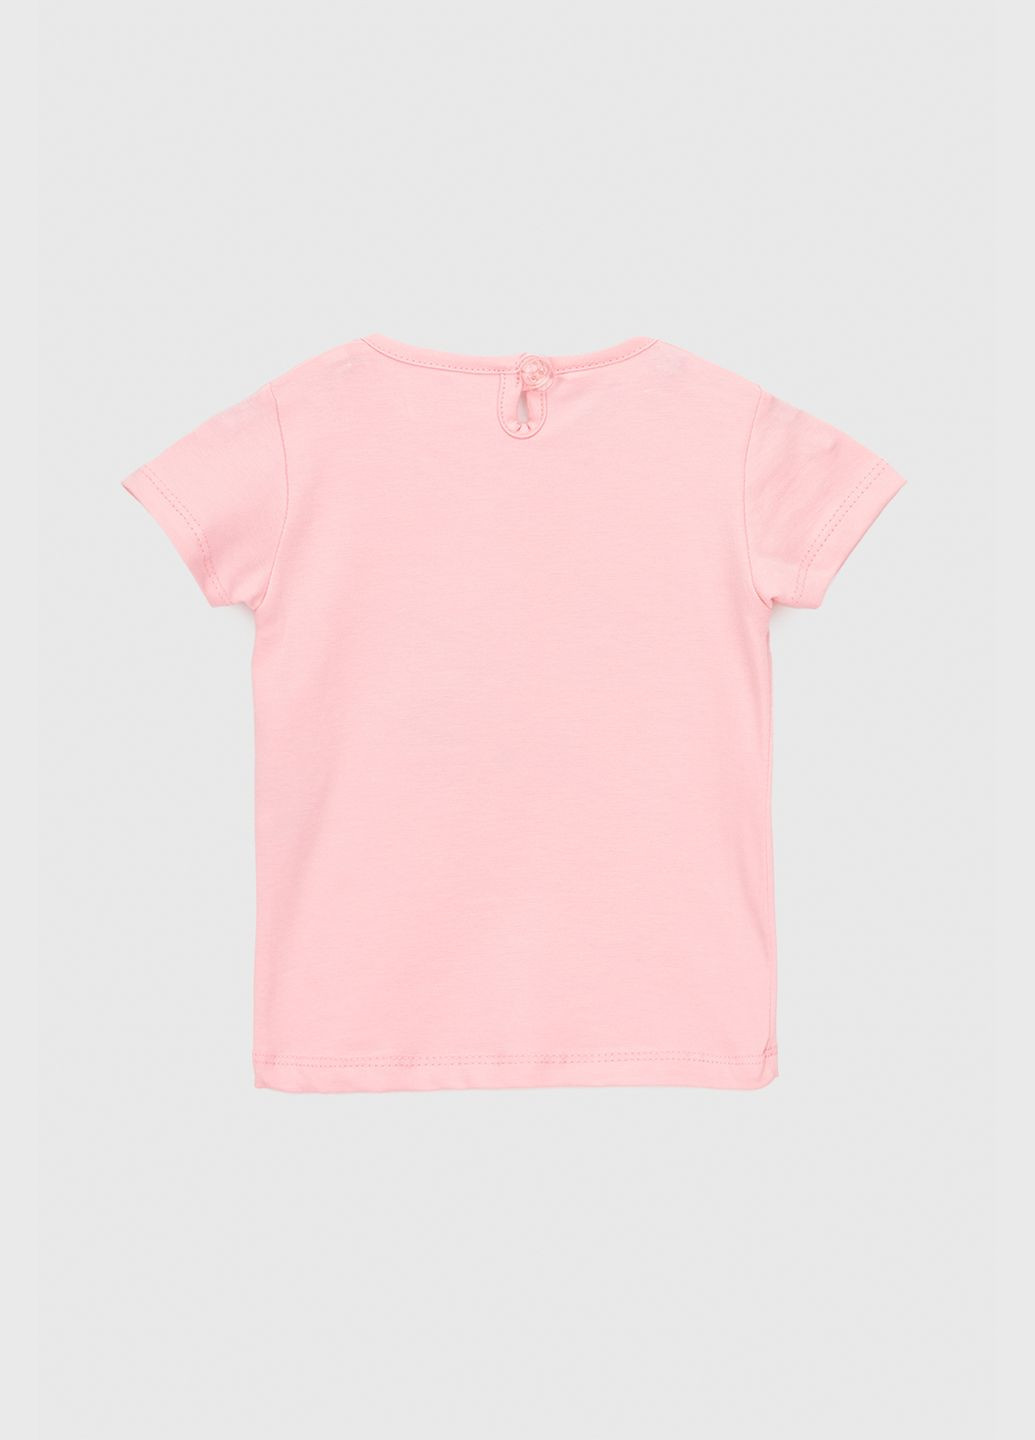 Розовый костюм (футболка+лосины) Baby Show